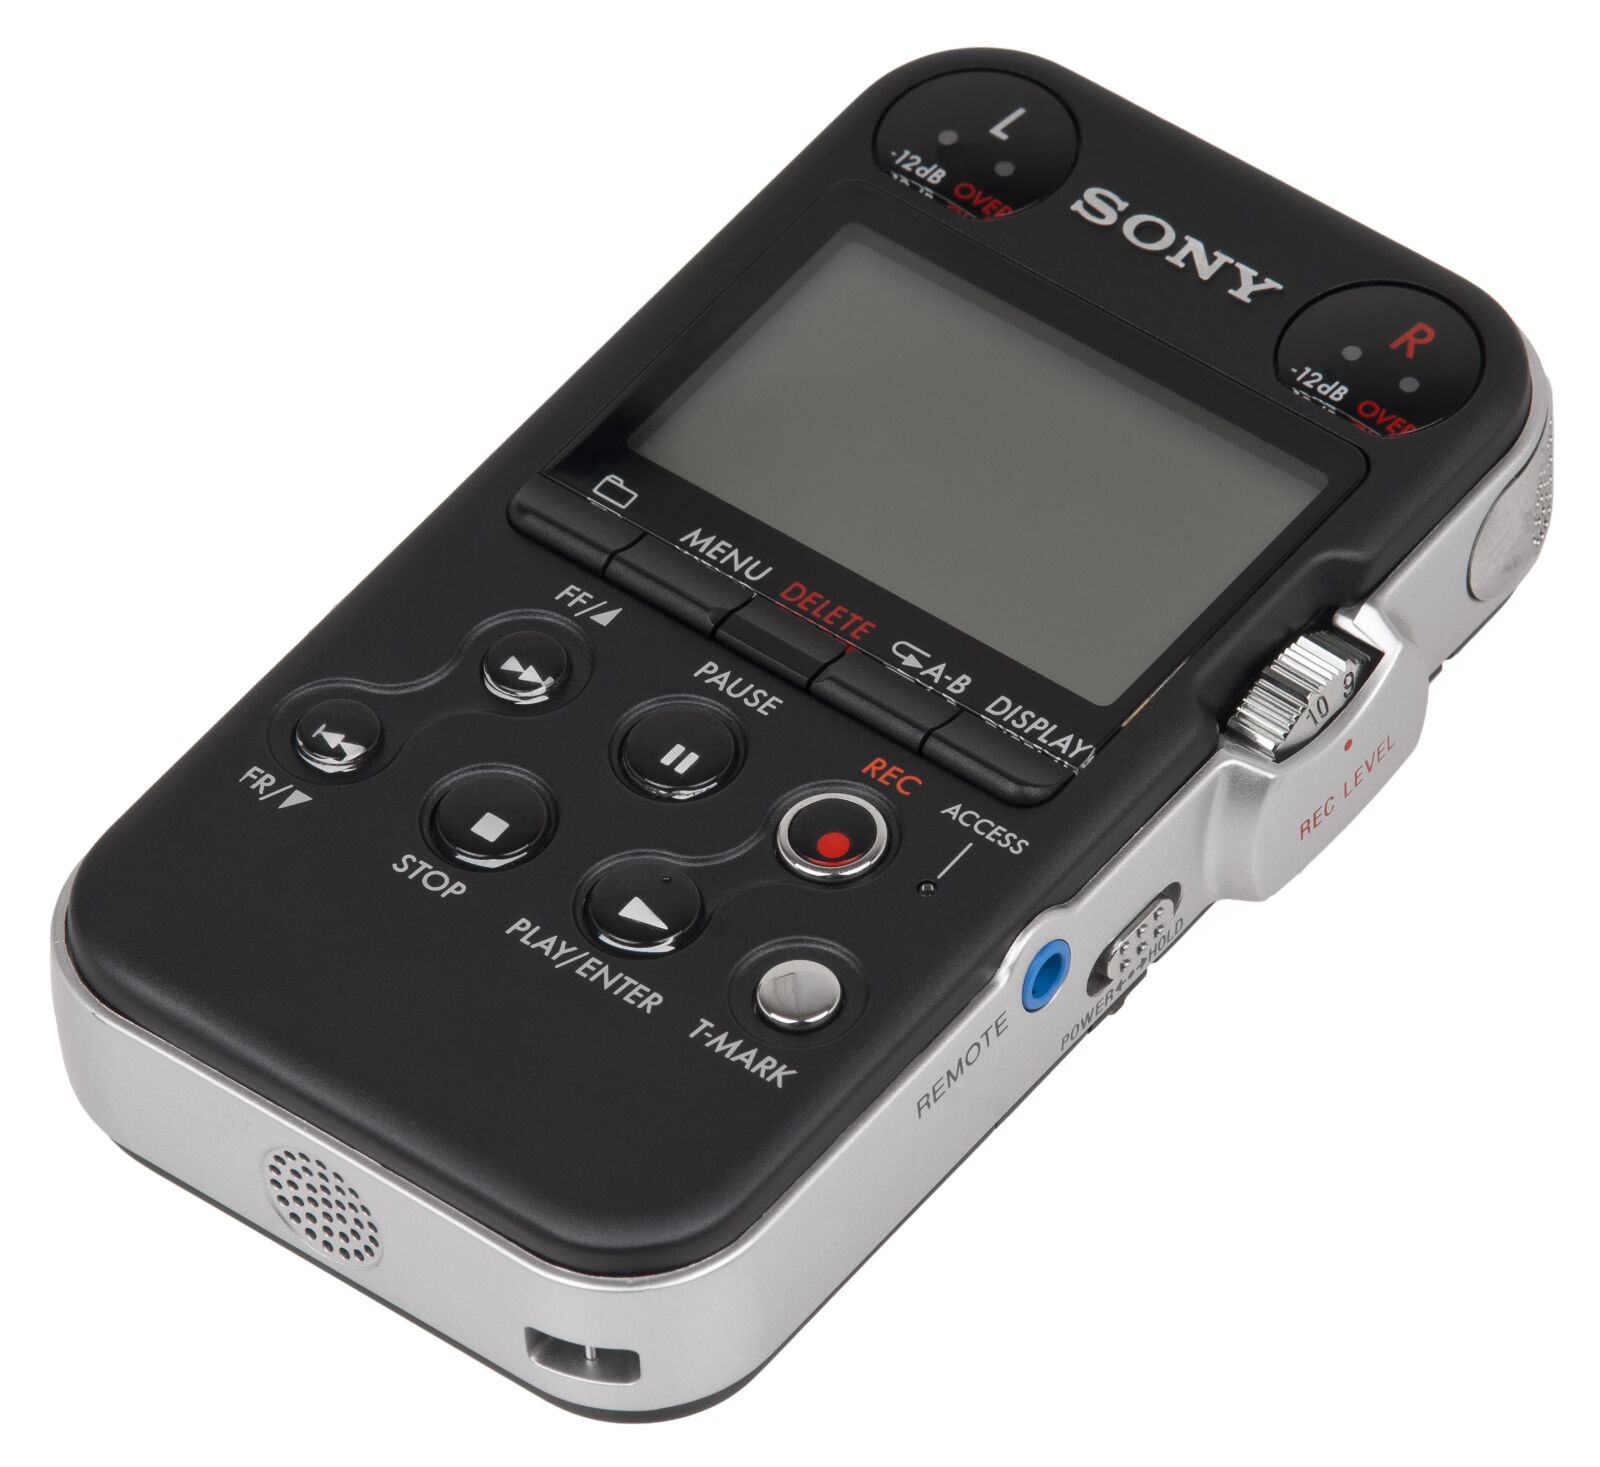 Sony Alpha DSLR-A700 sample photo. Sony, pcm, m10 photography